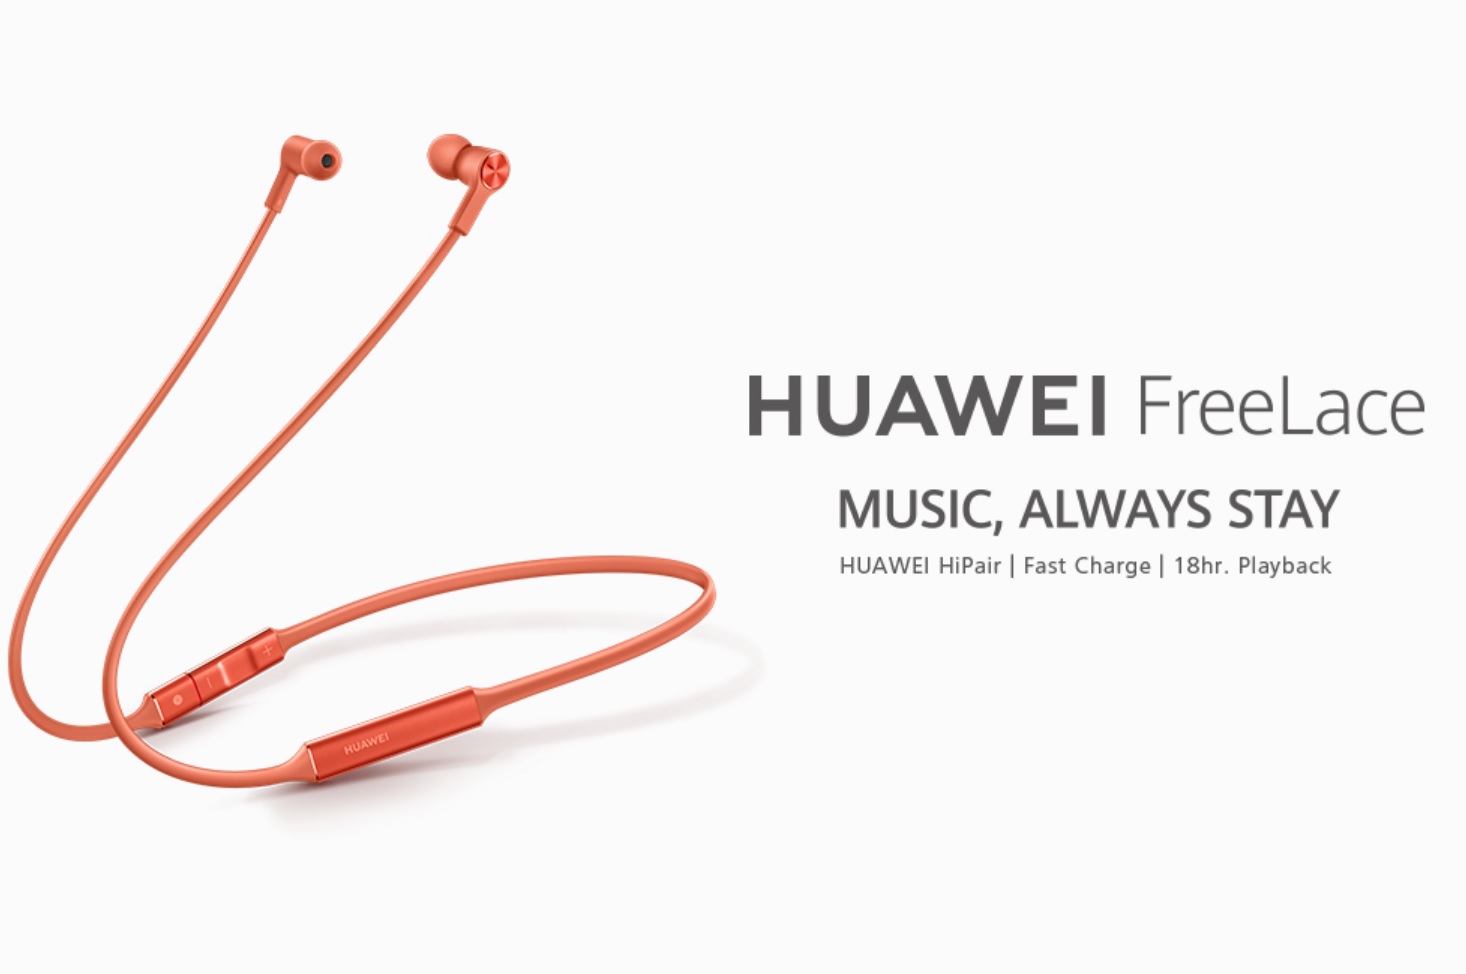 Huawei FreeLace kablosuz kulaklıklar fonksiyonel tasarımıyla dikkat çekiyor